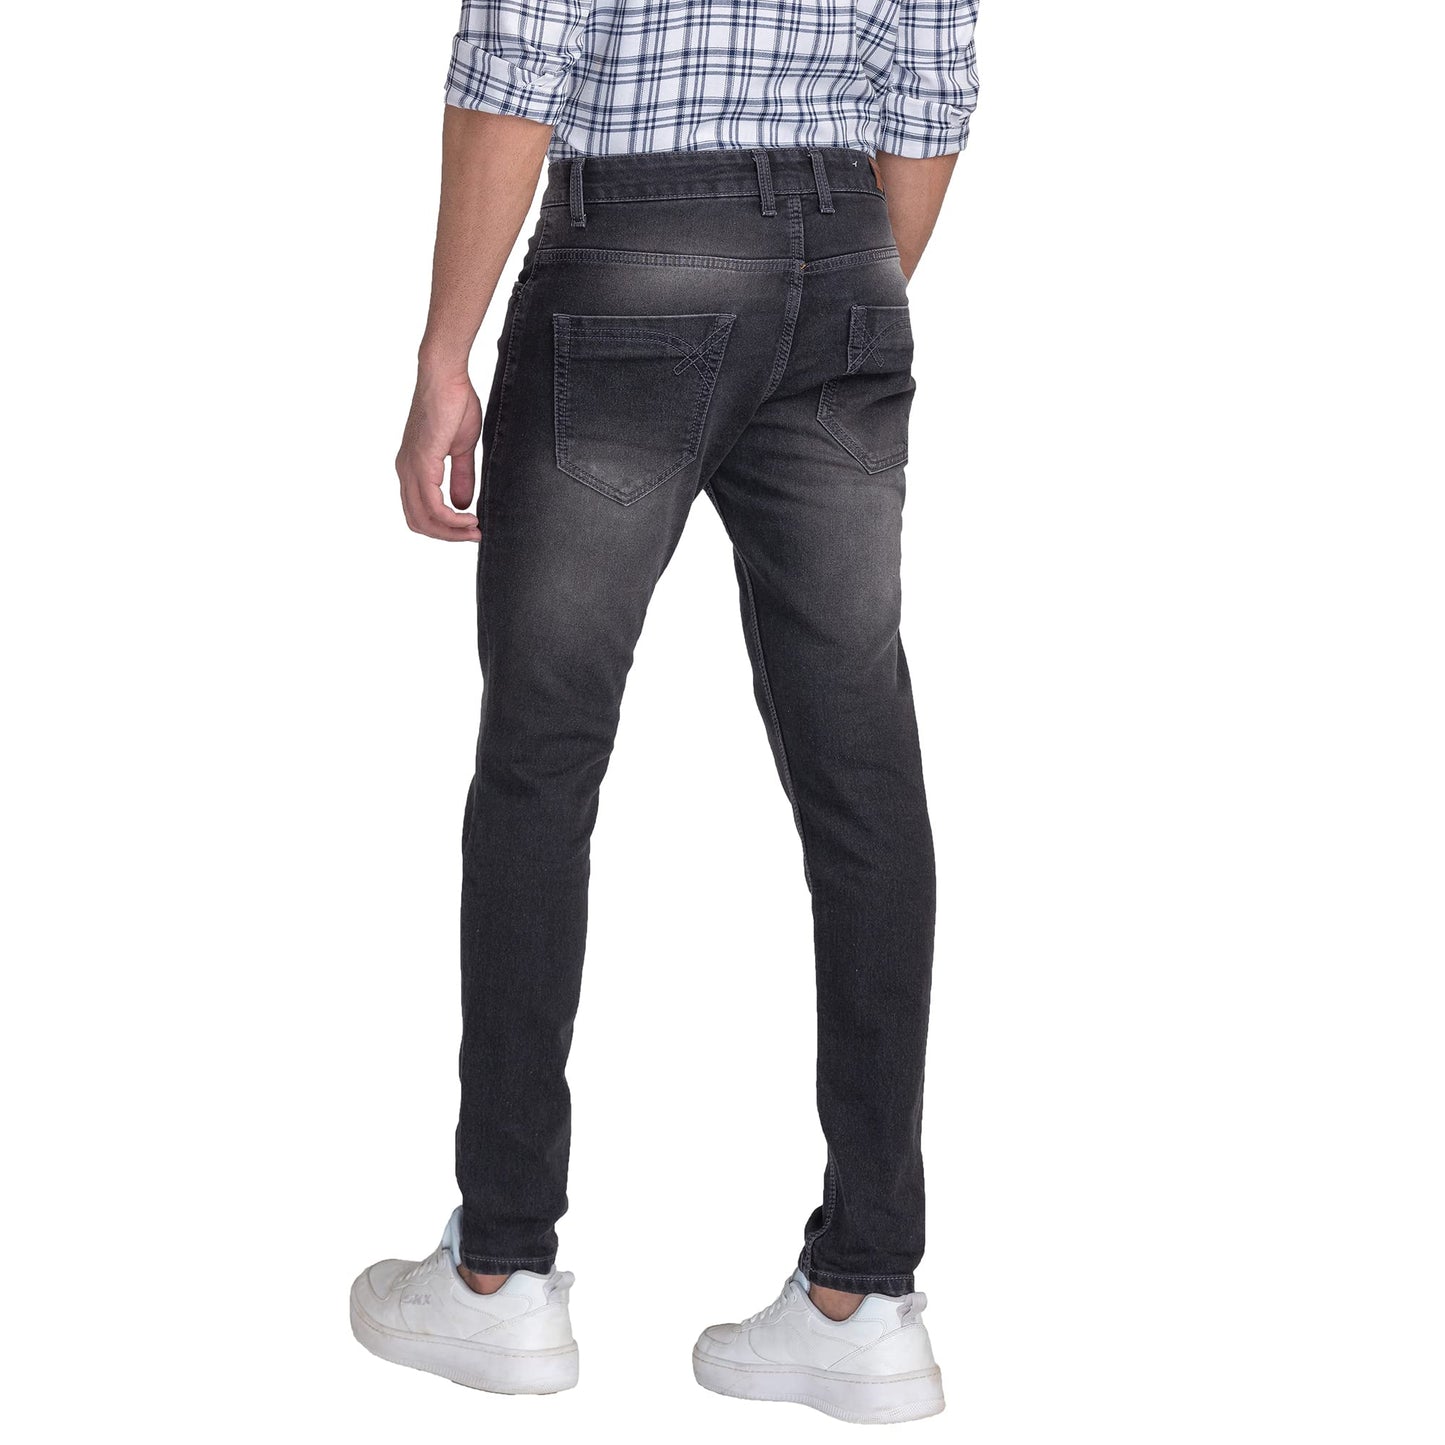 Giordano Men's Slim Fit Stretchable Jeans Black